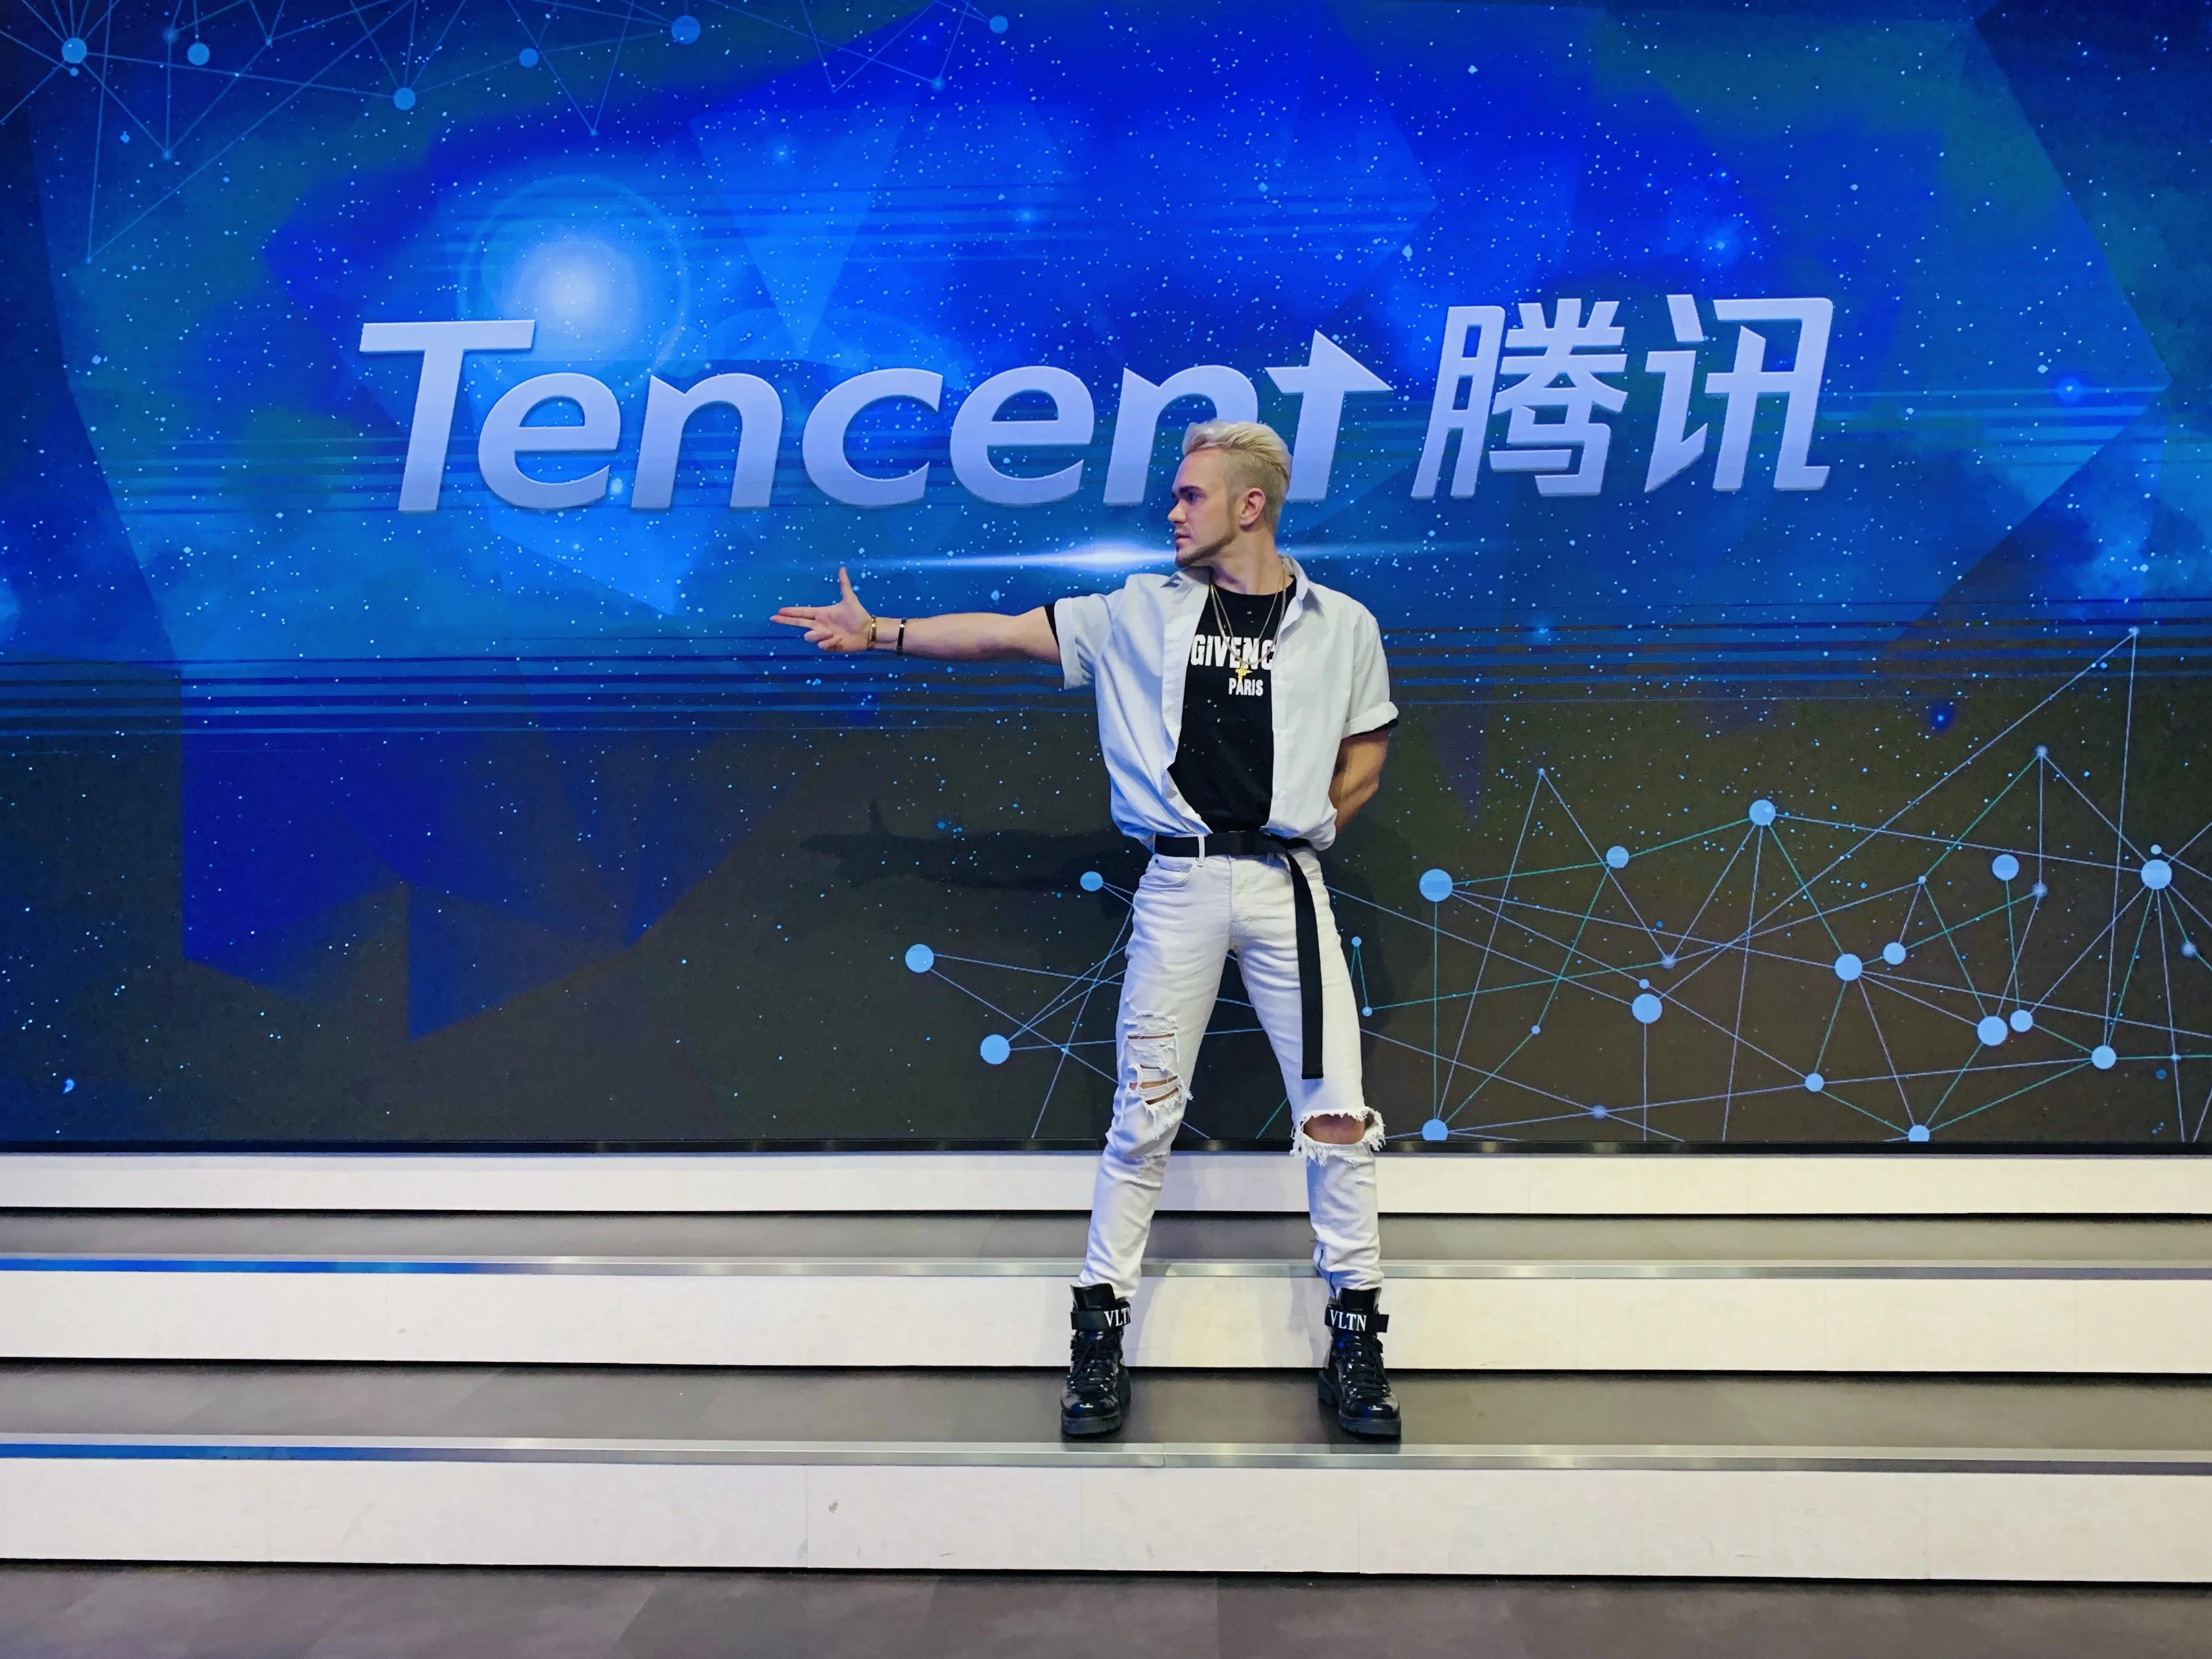 Славянский парень покорил Китай. Он имеет 14 млн подписчиков в TikTok и сотрудничает с Tencent - фото 1